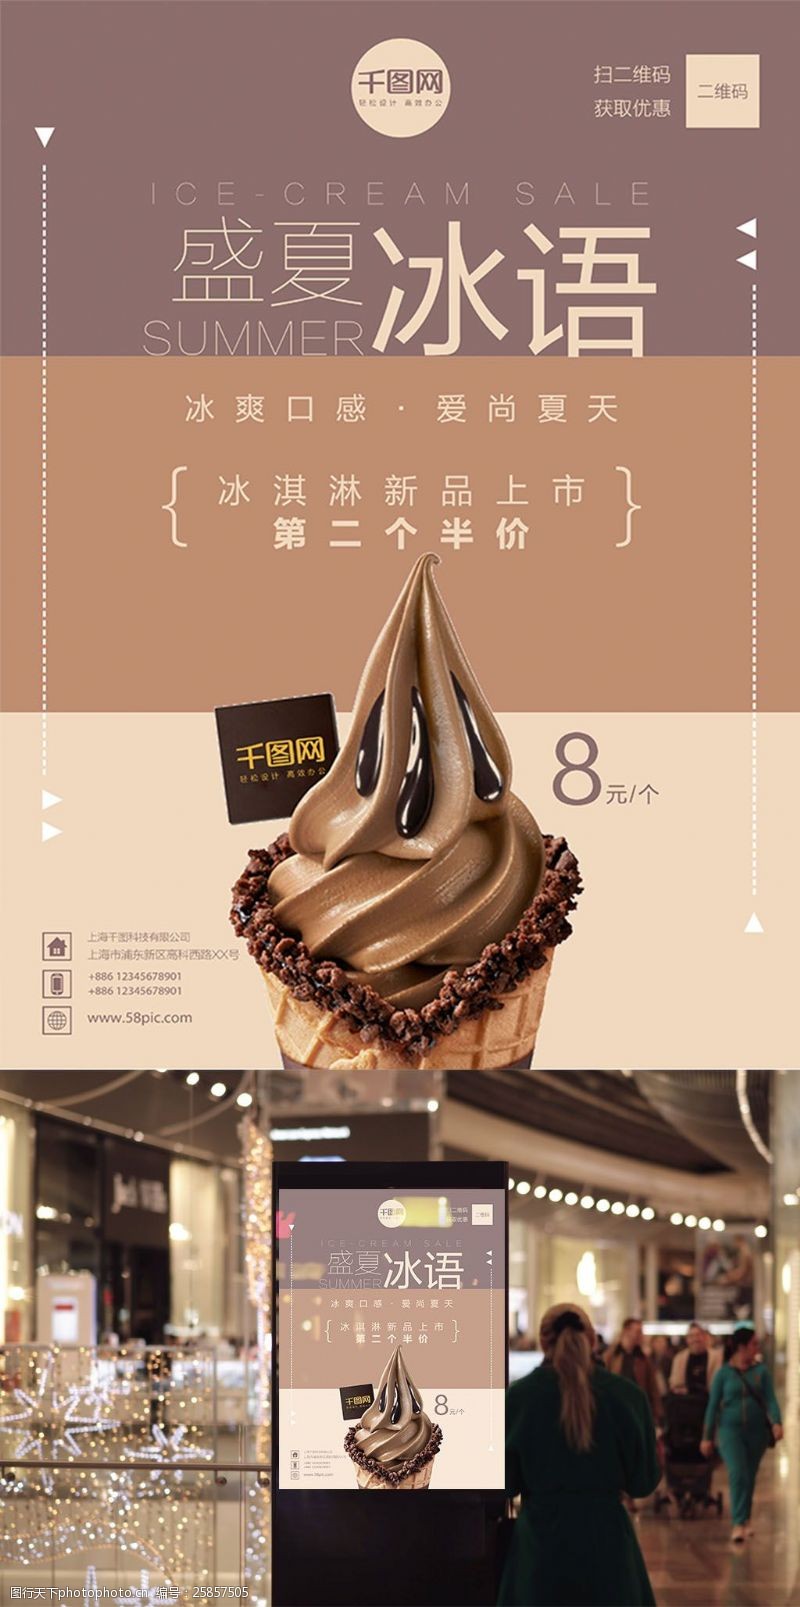 夏日活动宣传夏天盛夏冰淇淋促销活动宣传海报